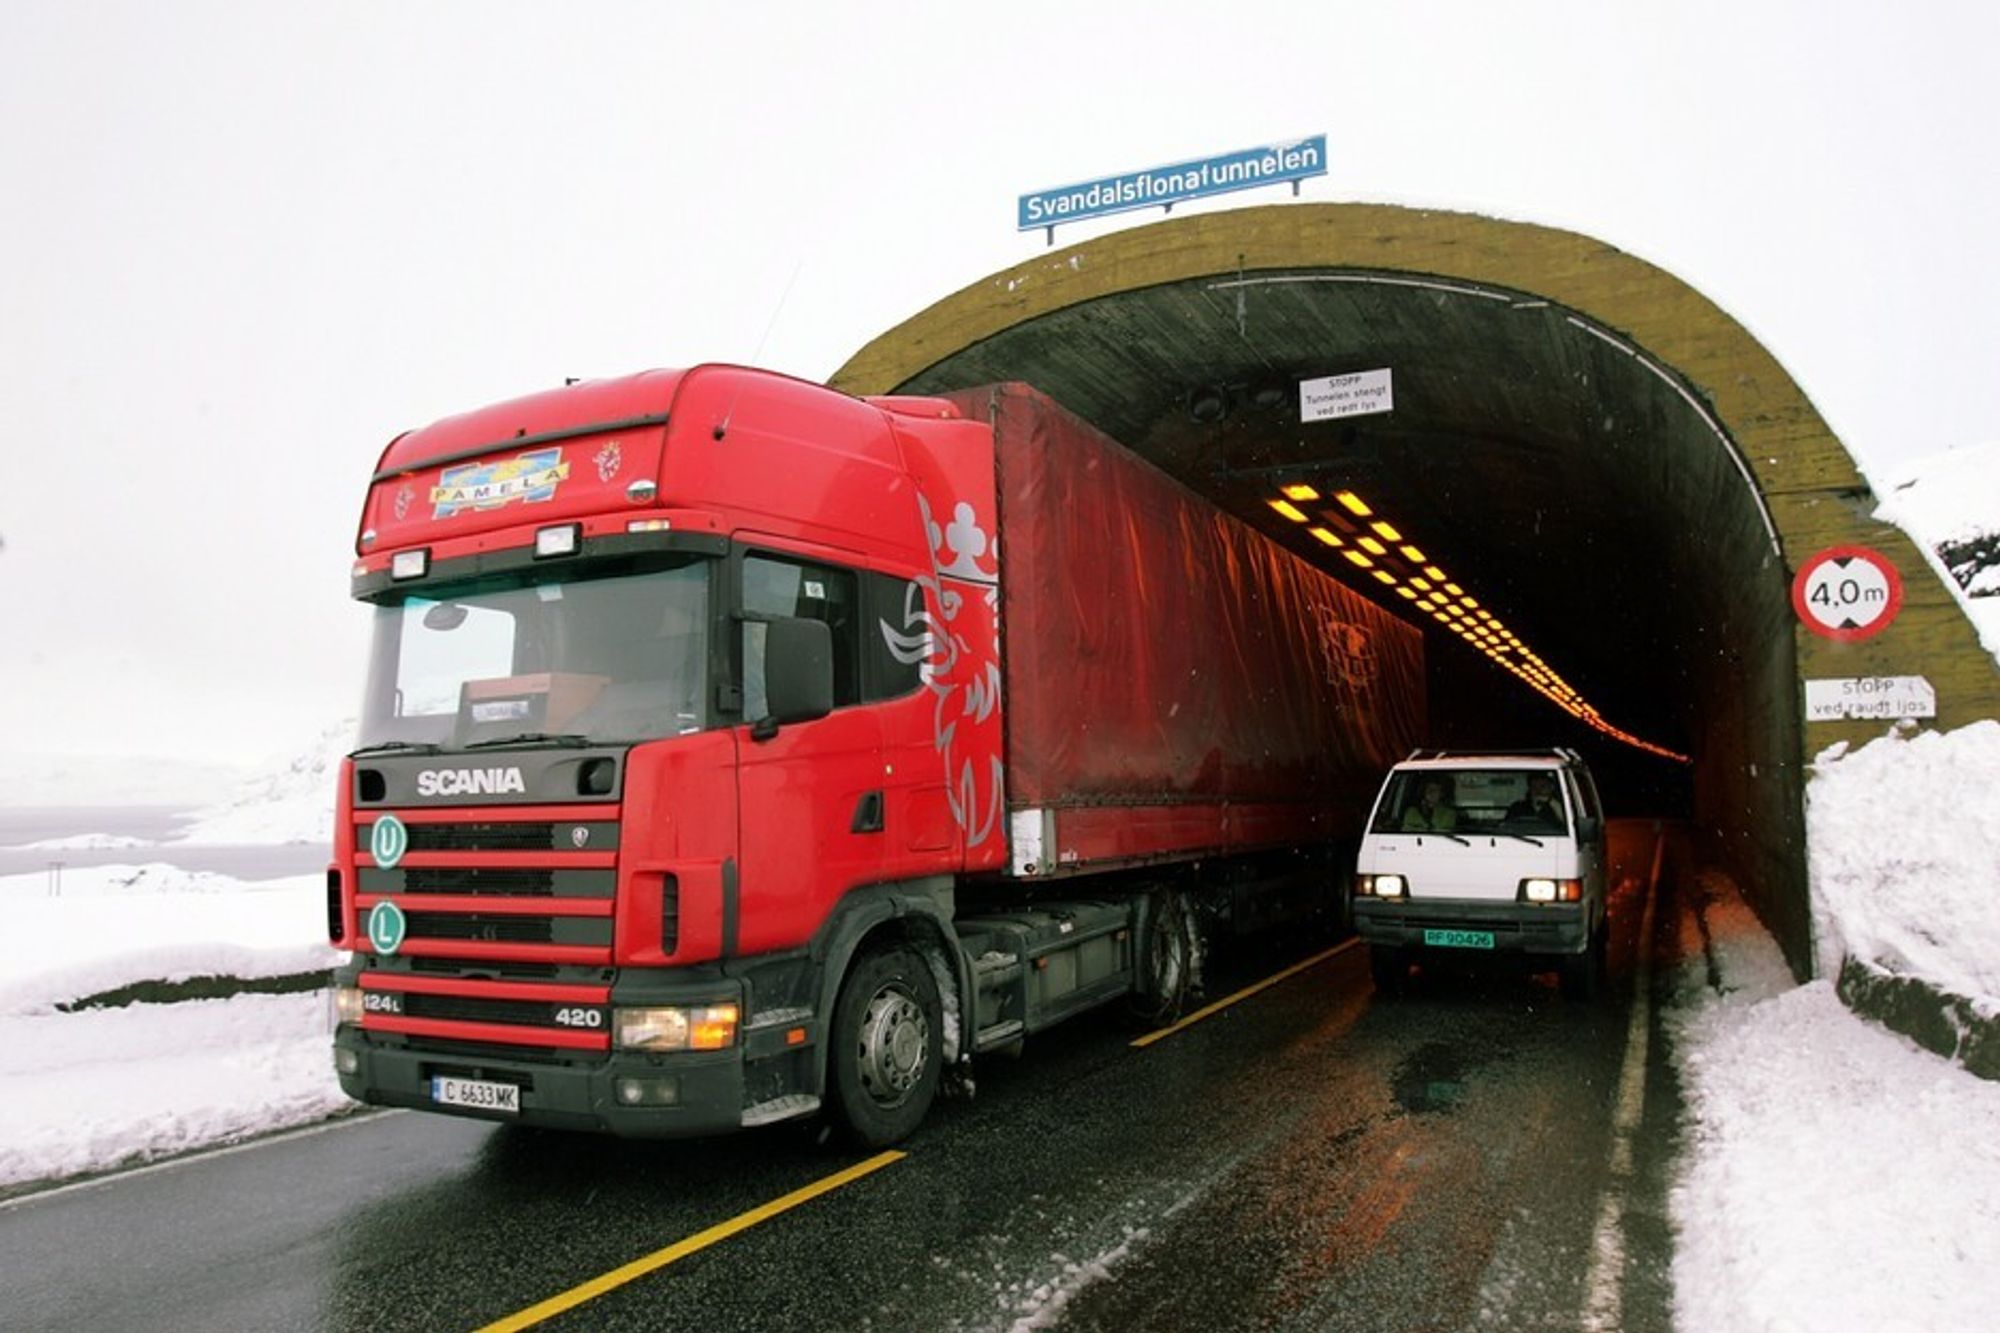 En velkjent situasjon på E 134: En bil på veg ut av Svandalsflonatunnelen passerer et utenlandsk vogntog som ligger helt ute mot midtlinjen. Når tunnelene er utvidet vil dette forhåpentligvis ikke forekomme så ofte.